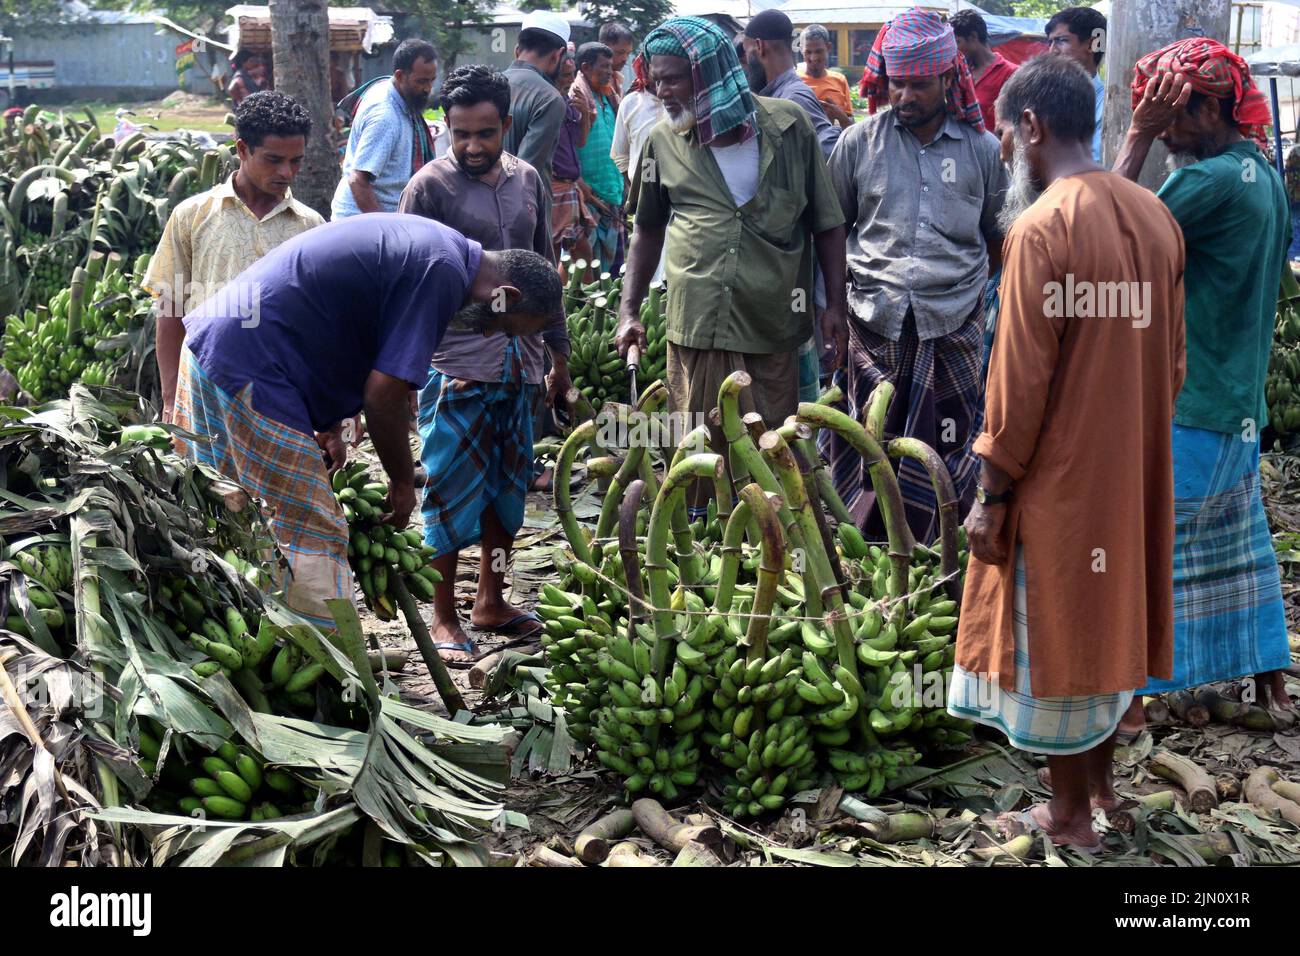 Der größte traditionelle Bananenmarkt in Bangladesch im Madhupur des Bezirks Tangail. Bauern verkaufen diese beliebten Früchte direkt an Großhändler. Bananen im Wert von 8 Lakhs bis 10 Lakhs werden täglich verkauft. 05. August 2022. Foto von Habibur Rahman/ABACAPRESS.COM Stockfoto